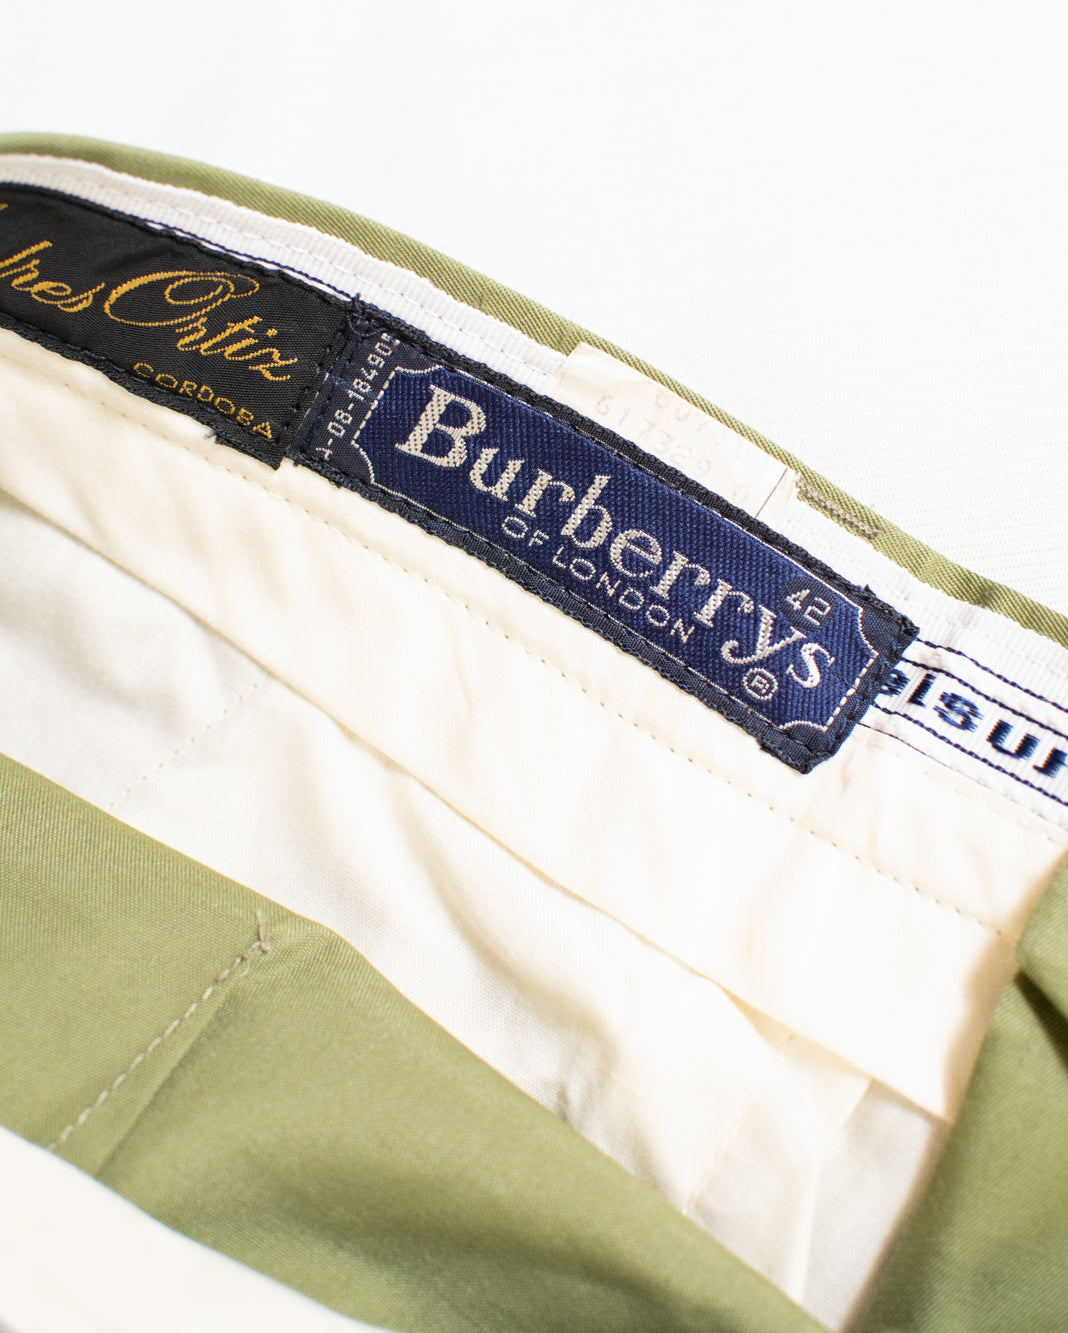 Pantalon de costume vert Burberry - si élégant !